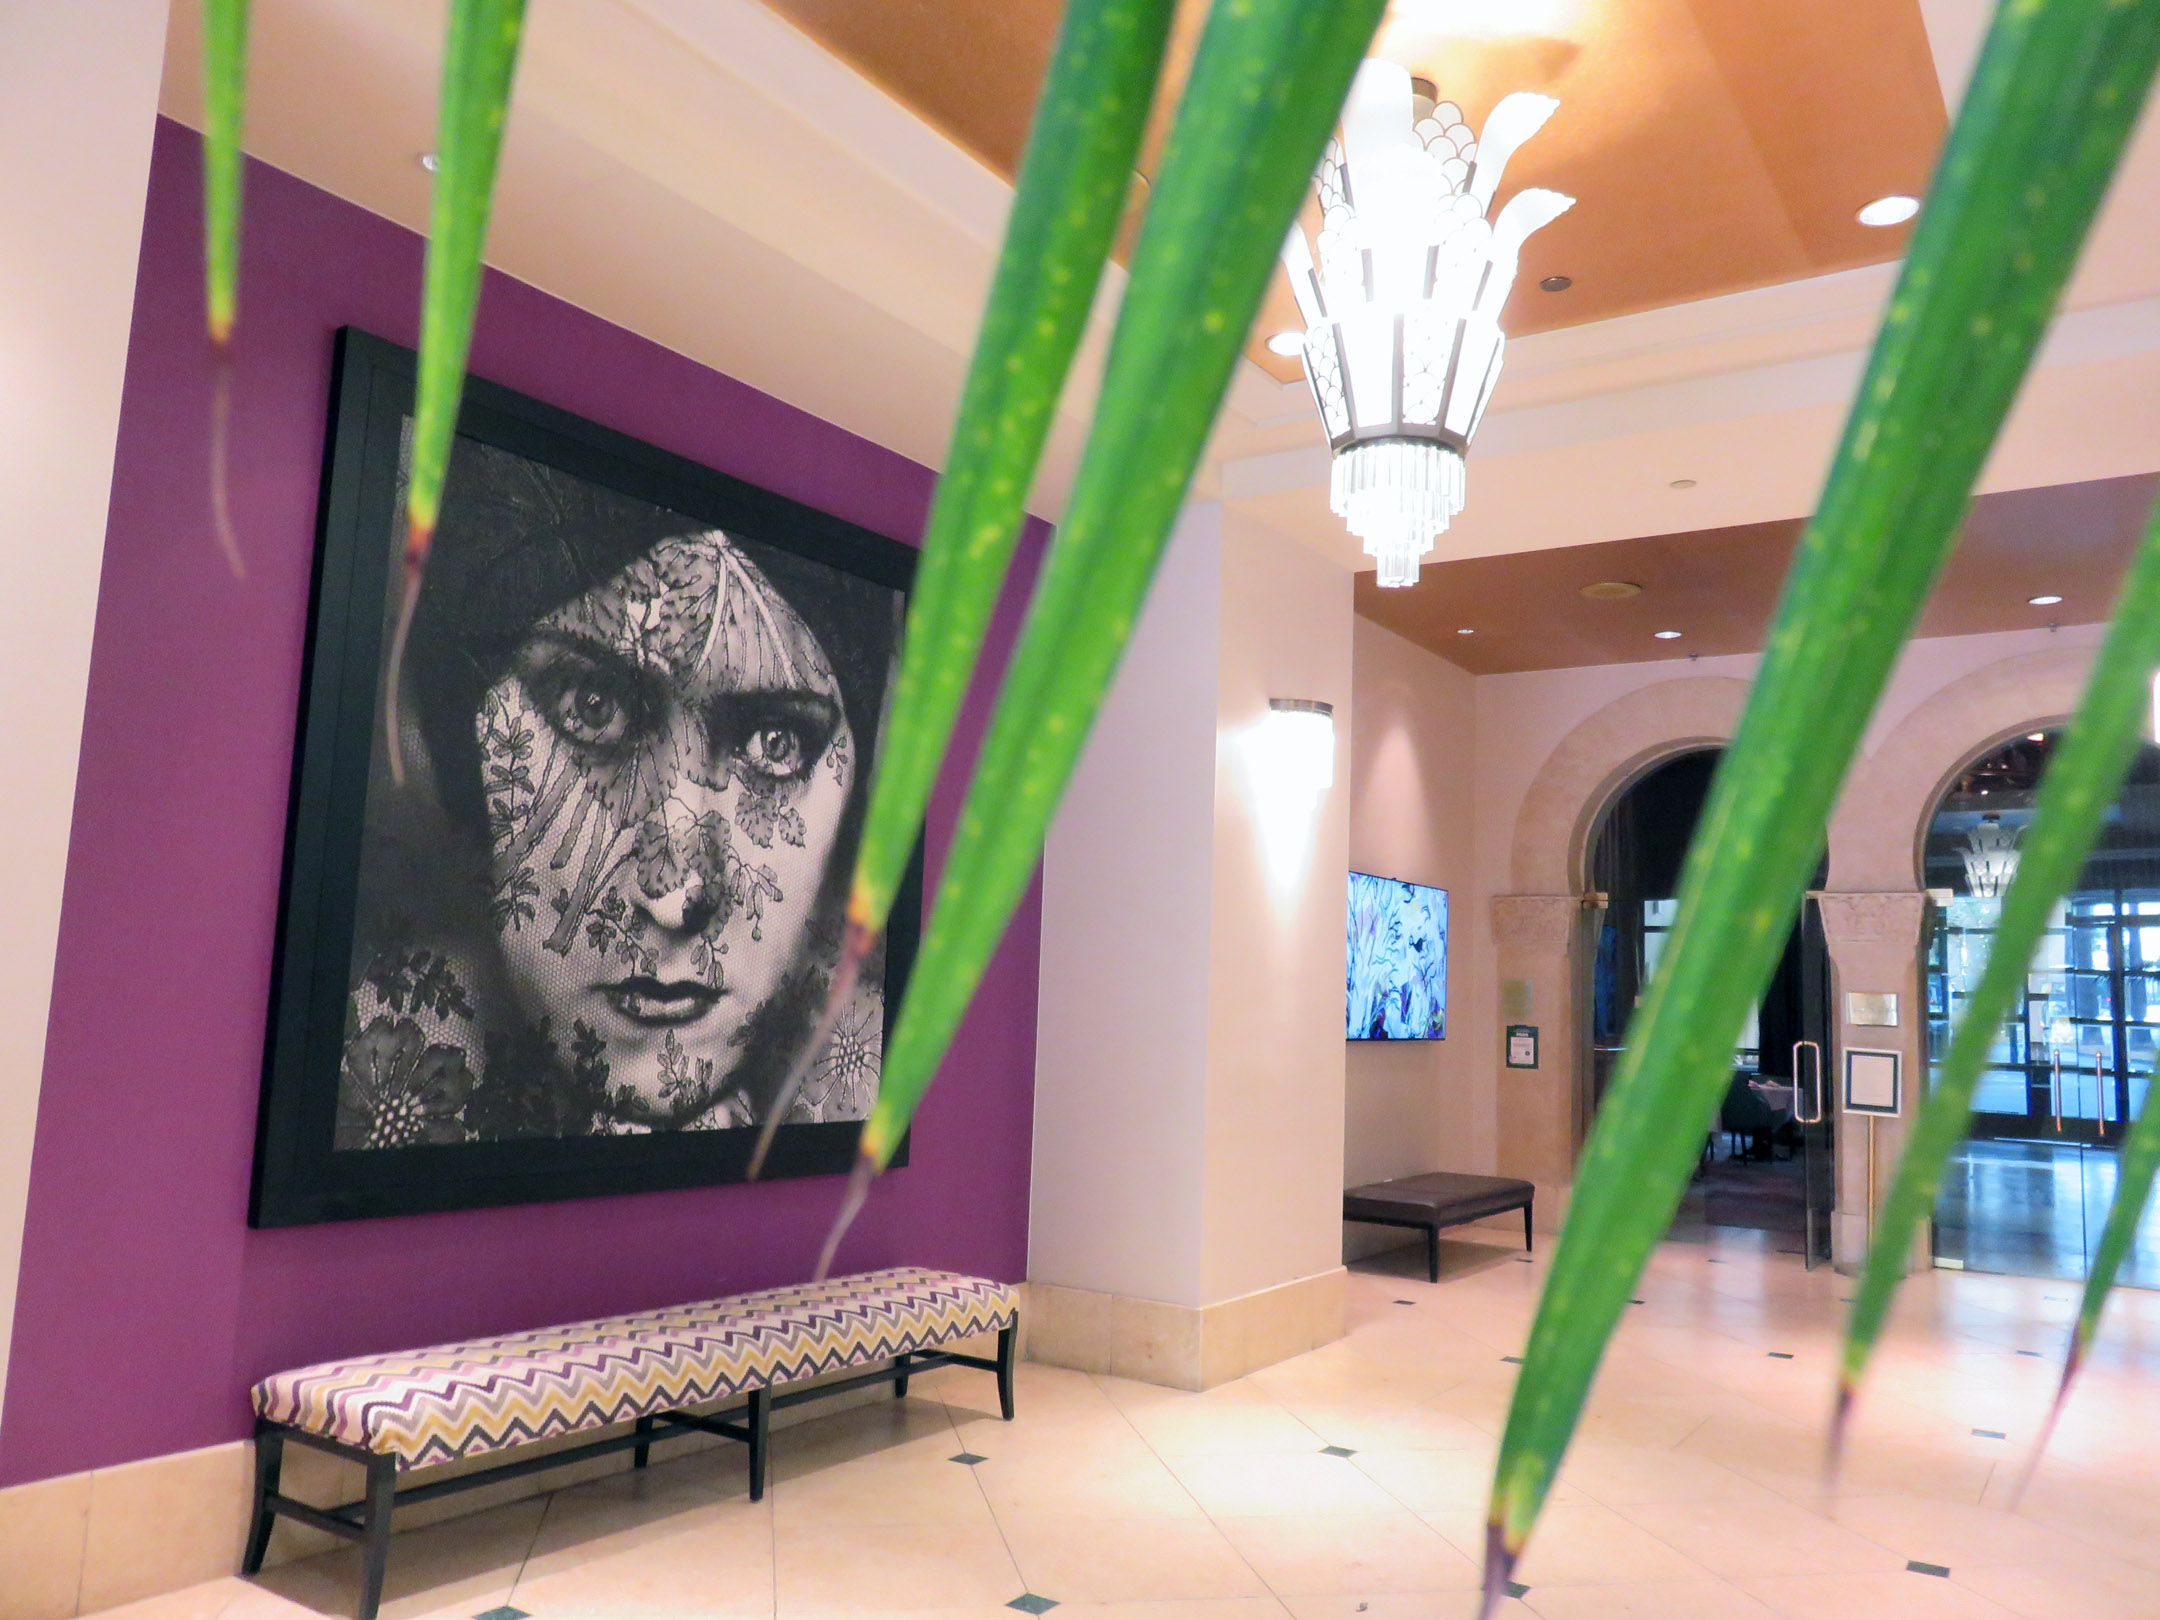 2. Hotel De Anza lobby